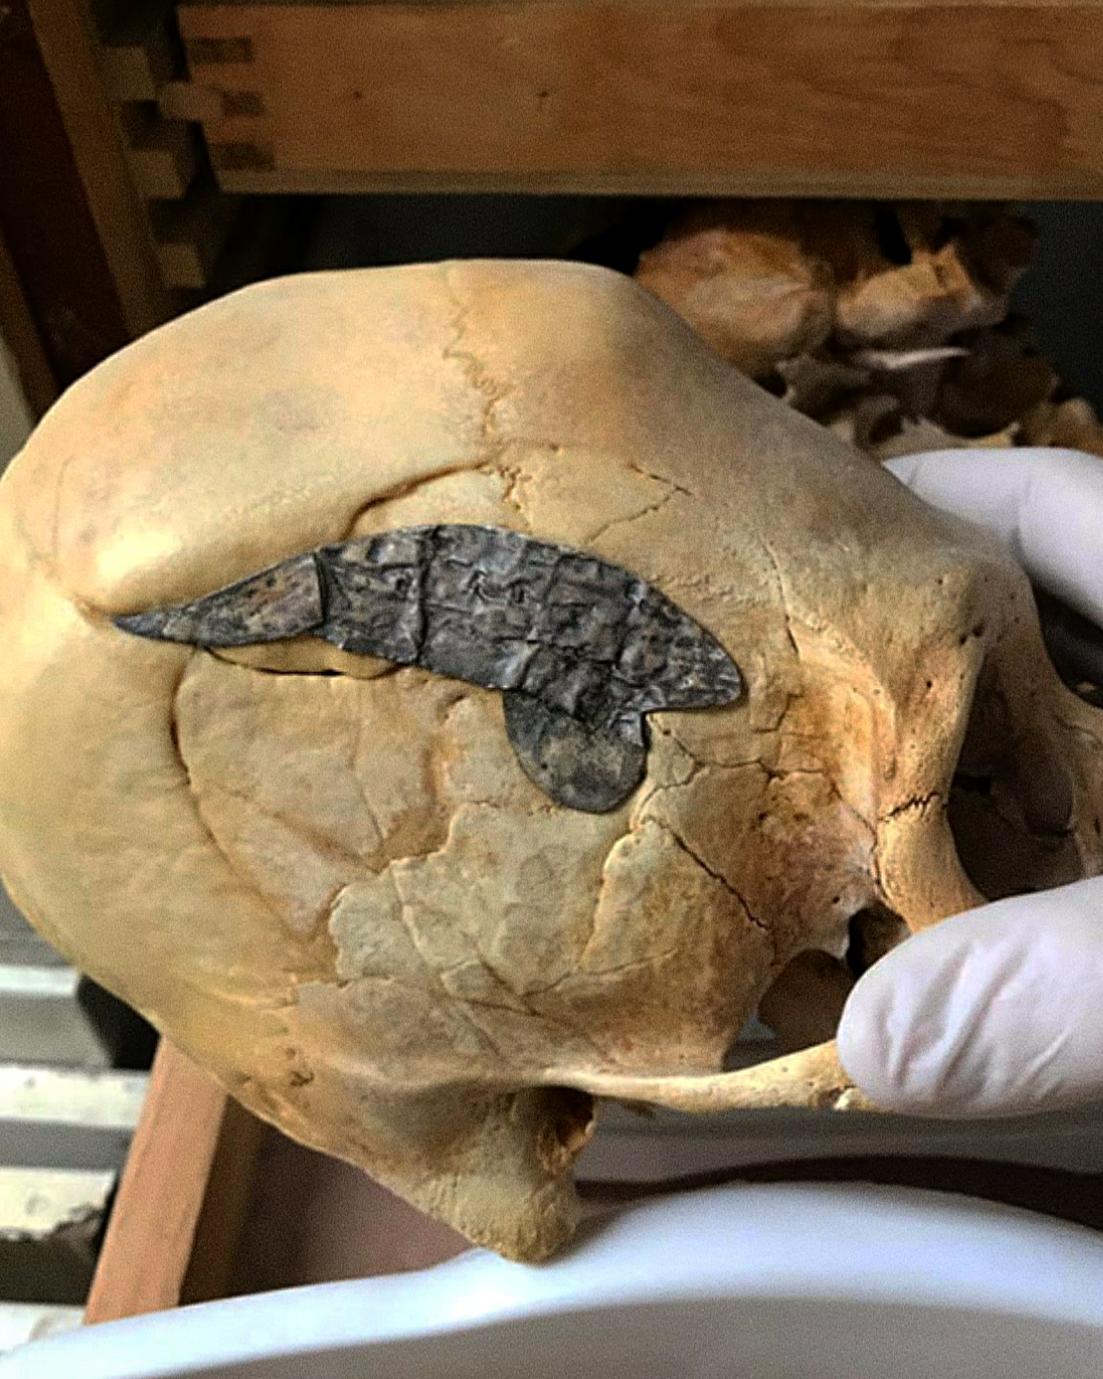 Hộp sọ dài của Peru đã trải qua phẫu thuật hộp sọ và được phẫu thuật cấy ghép kim loại để gắn kết xương sau khi bị thương trong trận chiến khoảng 2,000 năm trước